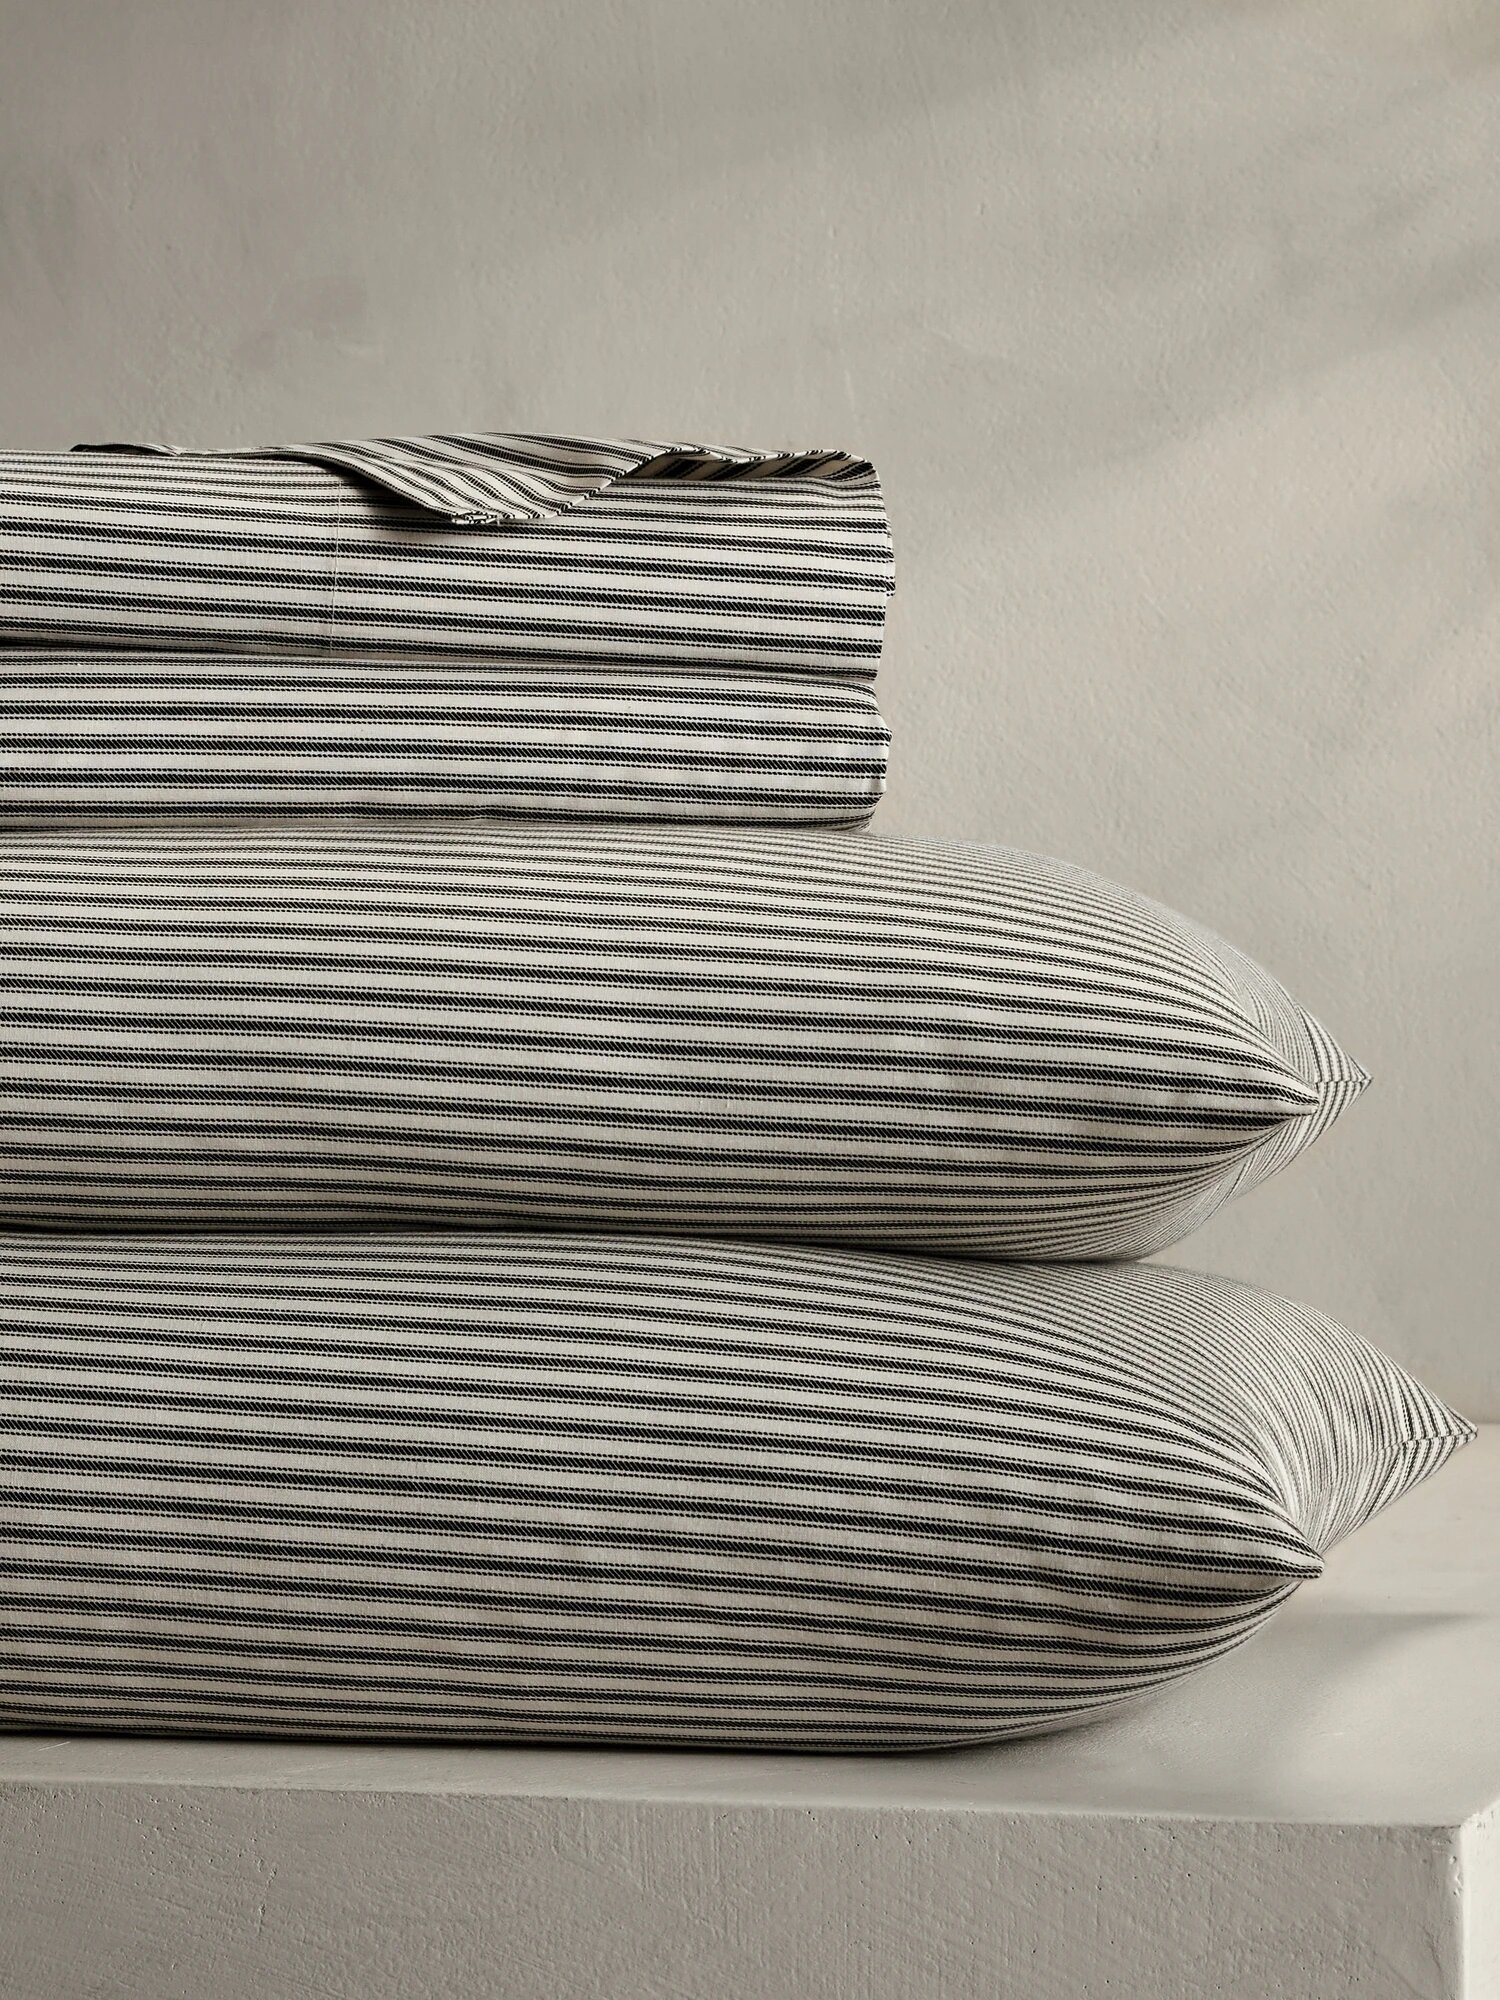 ticking-stripe-sheet-set-american-grown-cotton.jpg